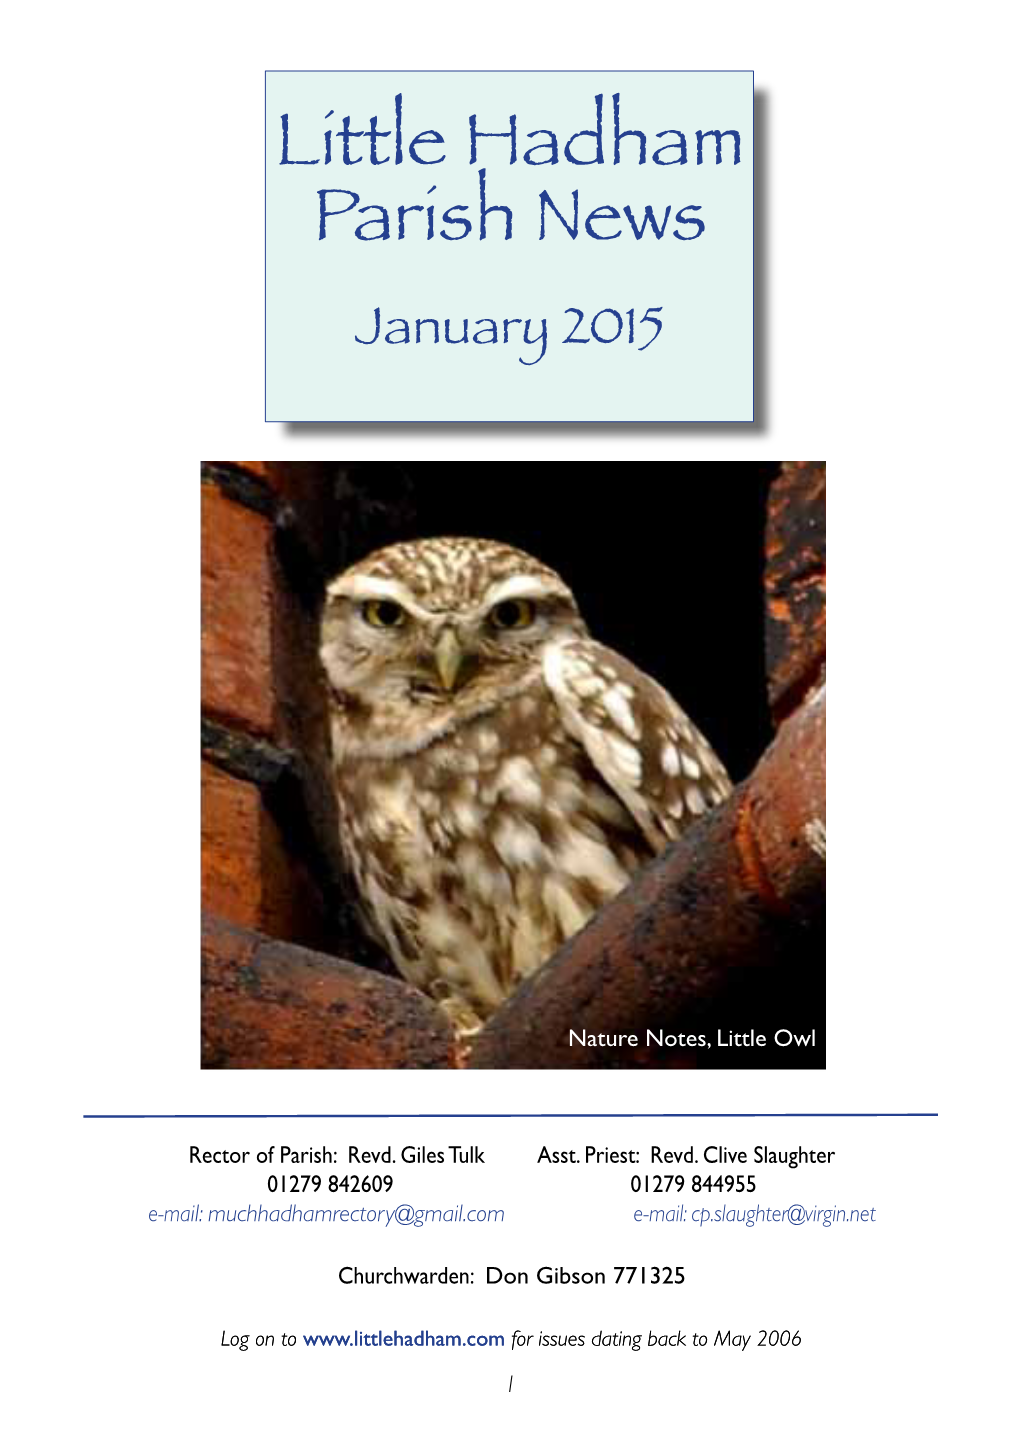 Little Hadham Parish News January 2015